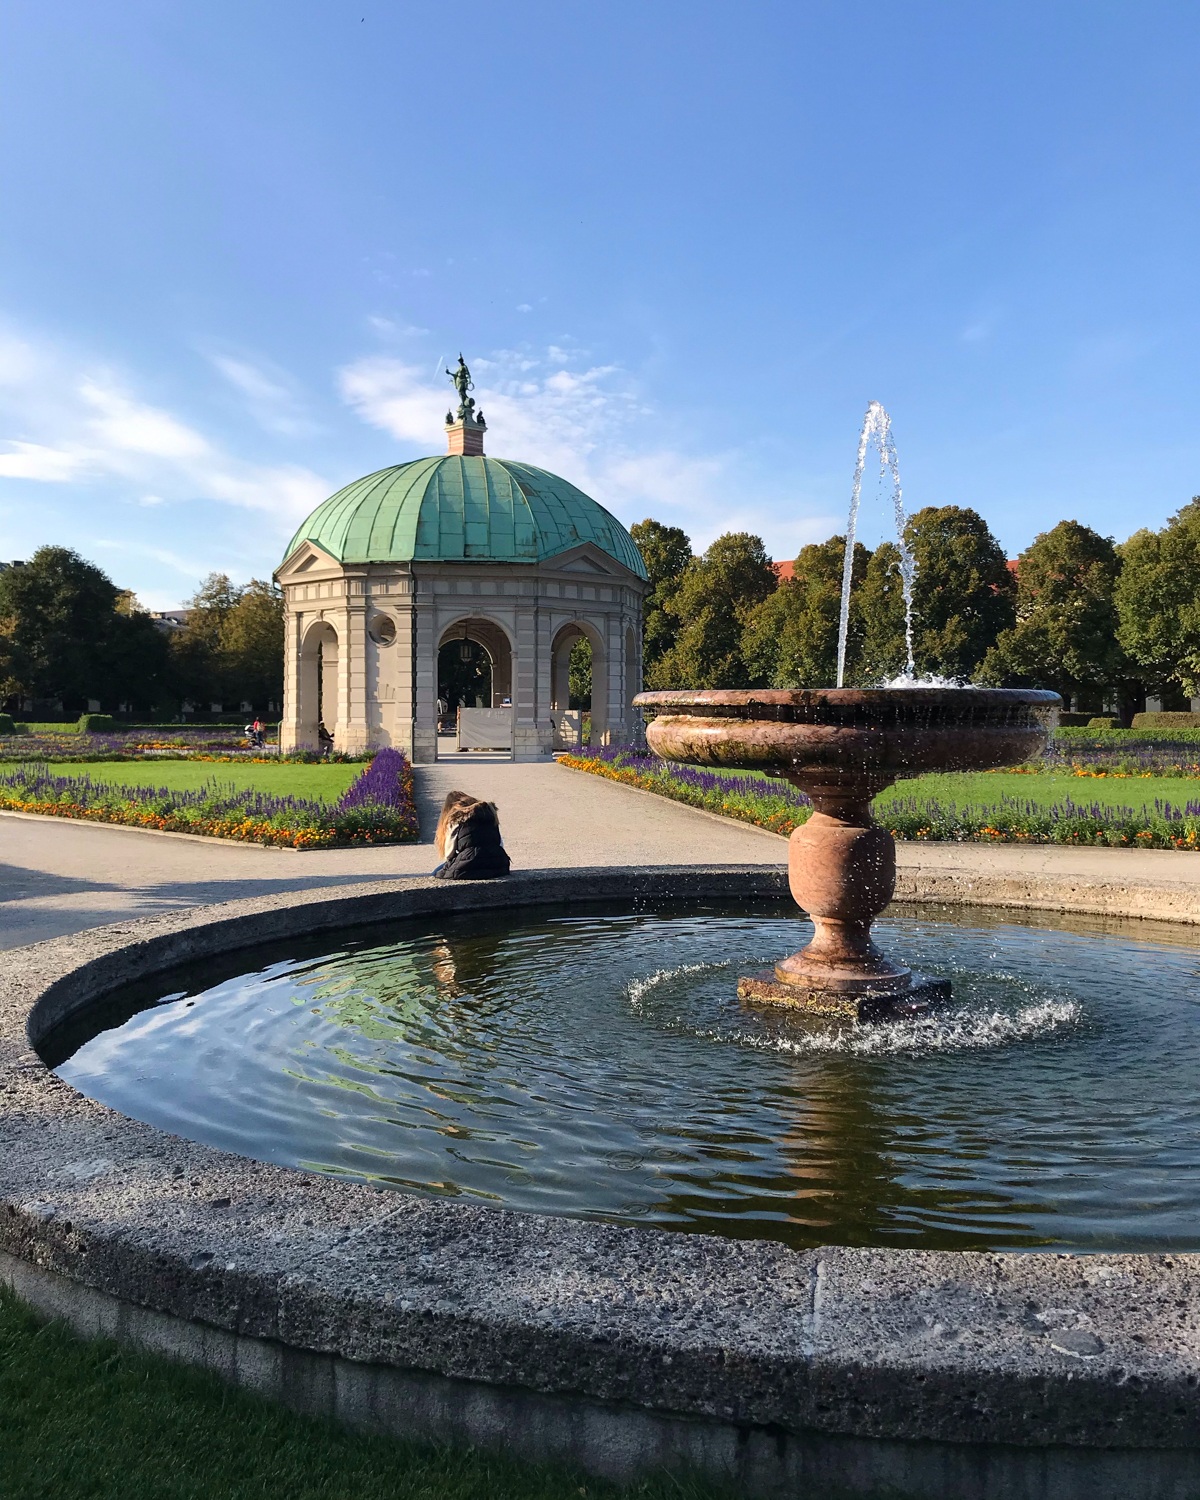 Hofgarten in Munich, Germany